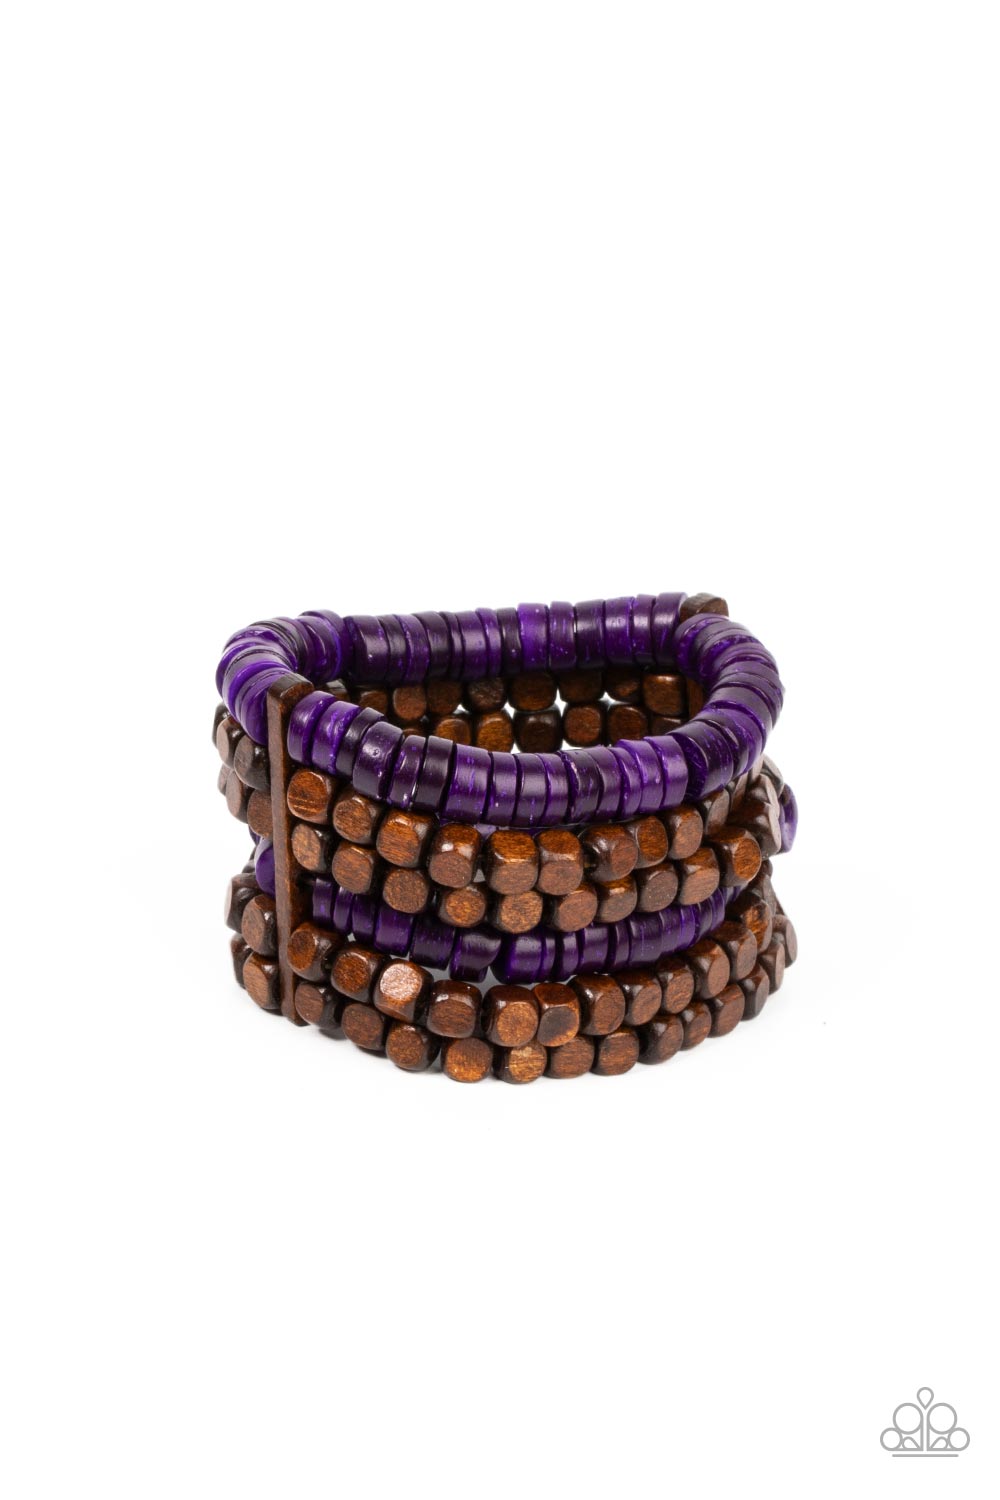 Paparazzi Bracelets - Fiji Fiesta - Purple